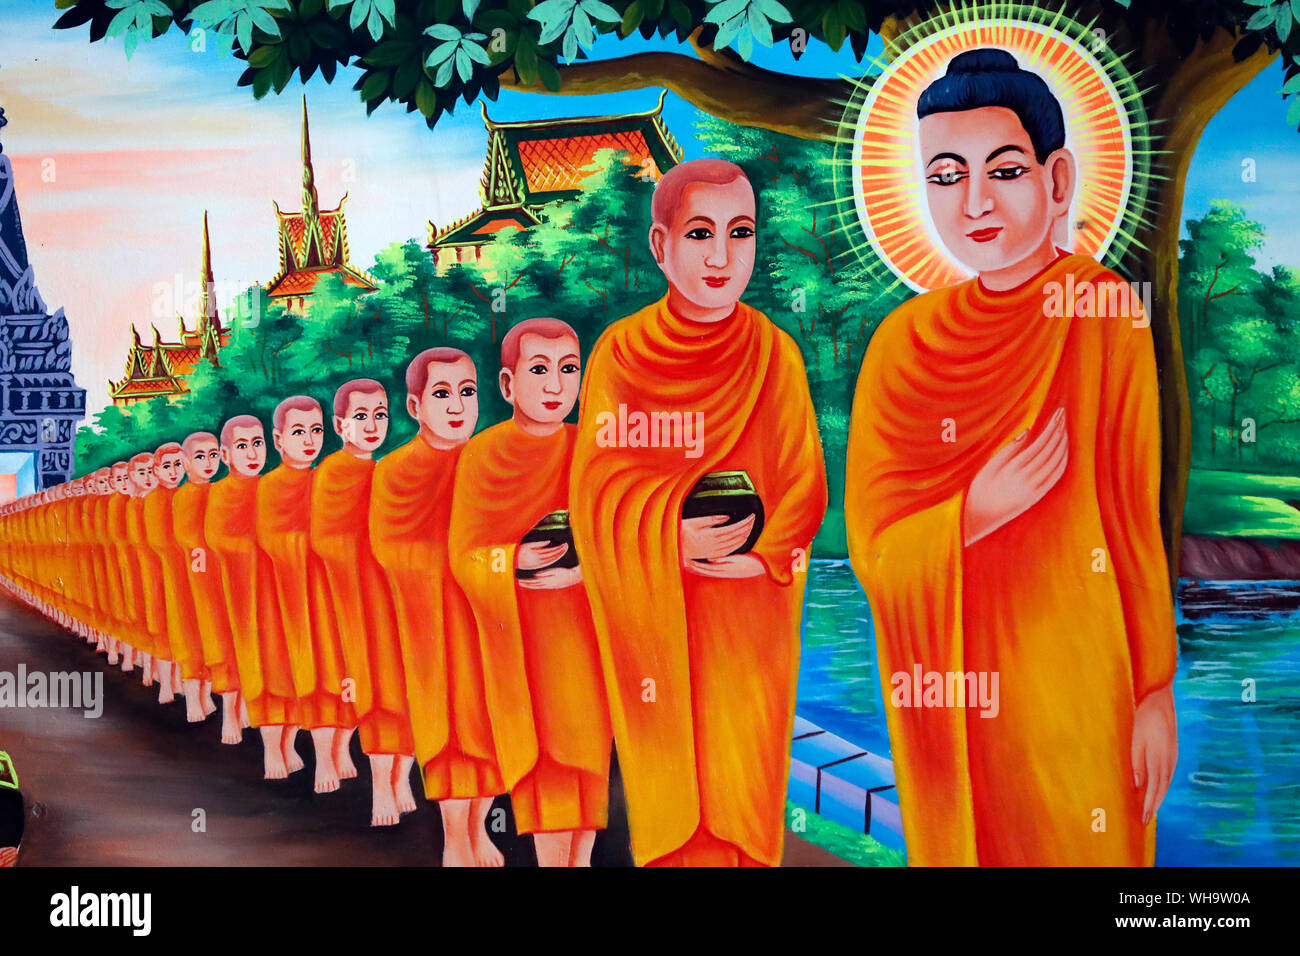 La vie de Bouddha, Siddharta Gautama, murale montrant une visite à Rajagaha, ville où le Bouddha s'est rendu pour l'aumône, Chau Doc, An Giang, Vietnam Banque D'Images